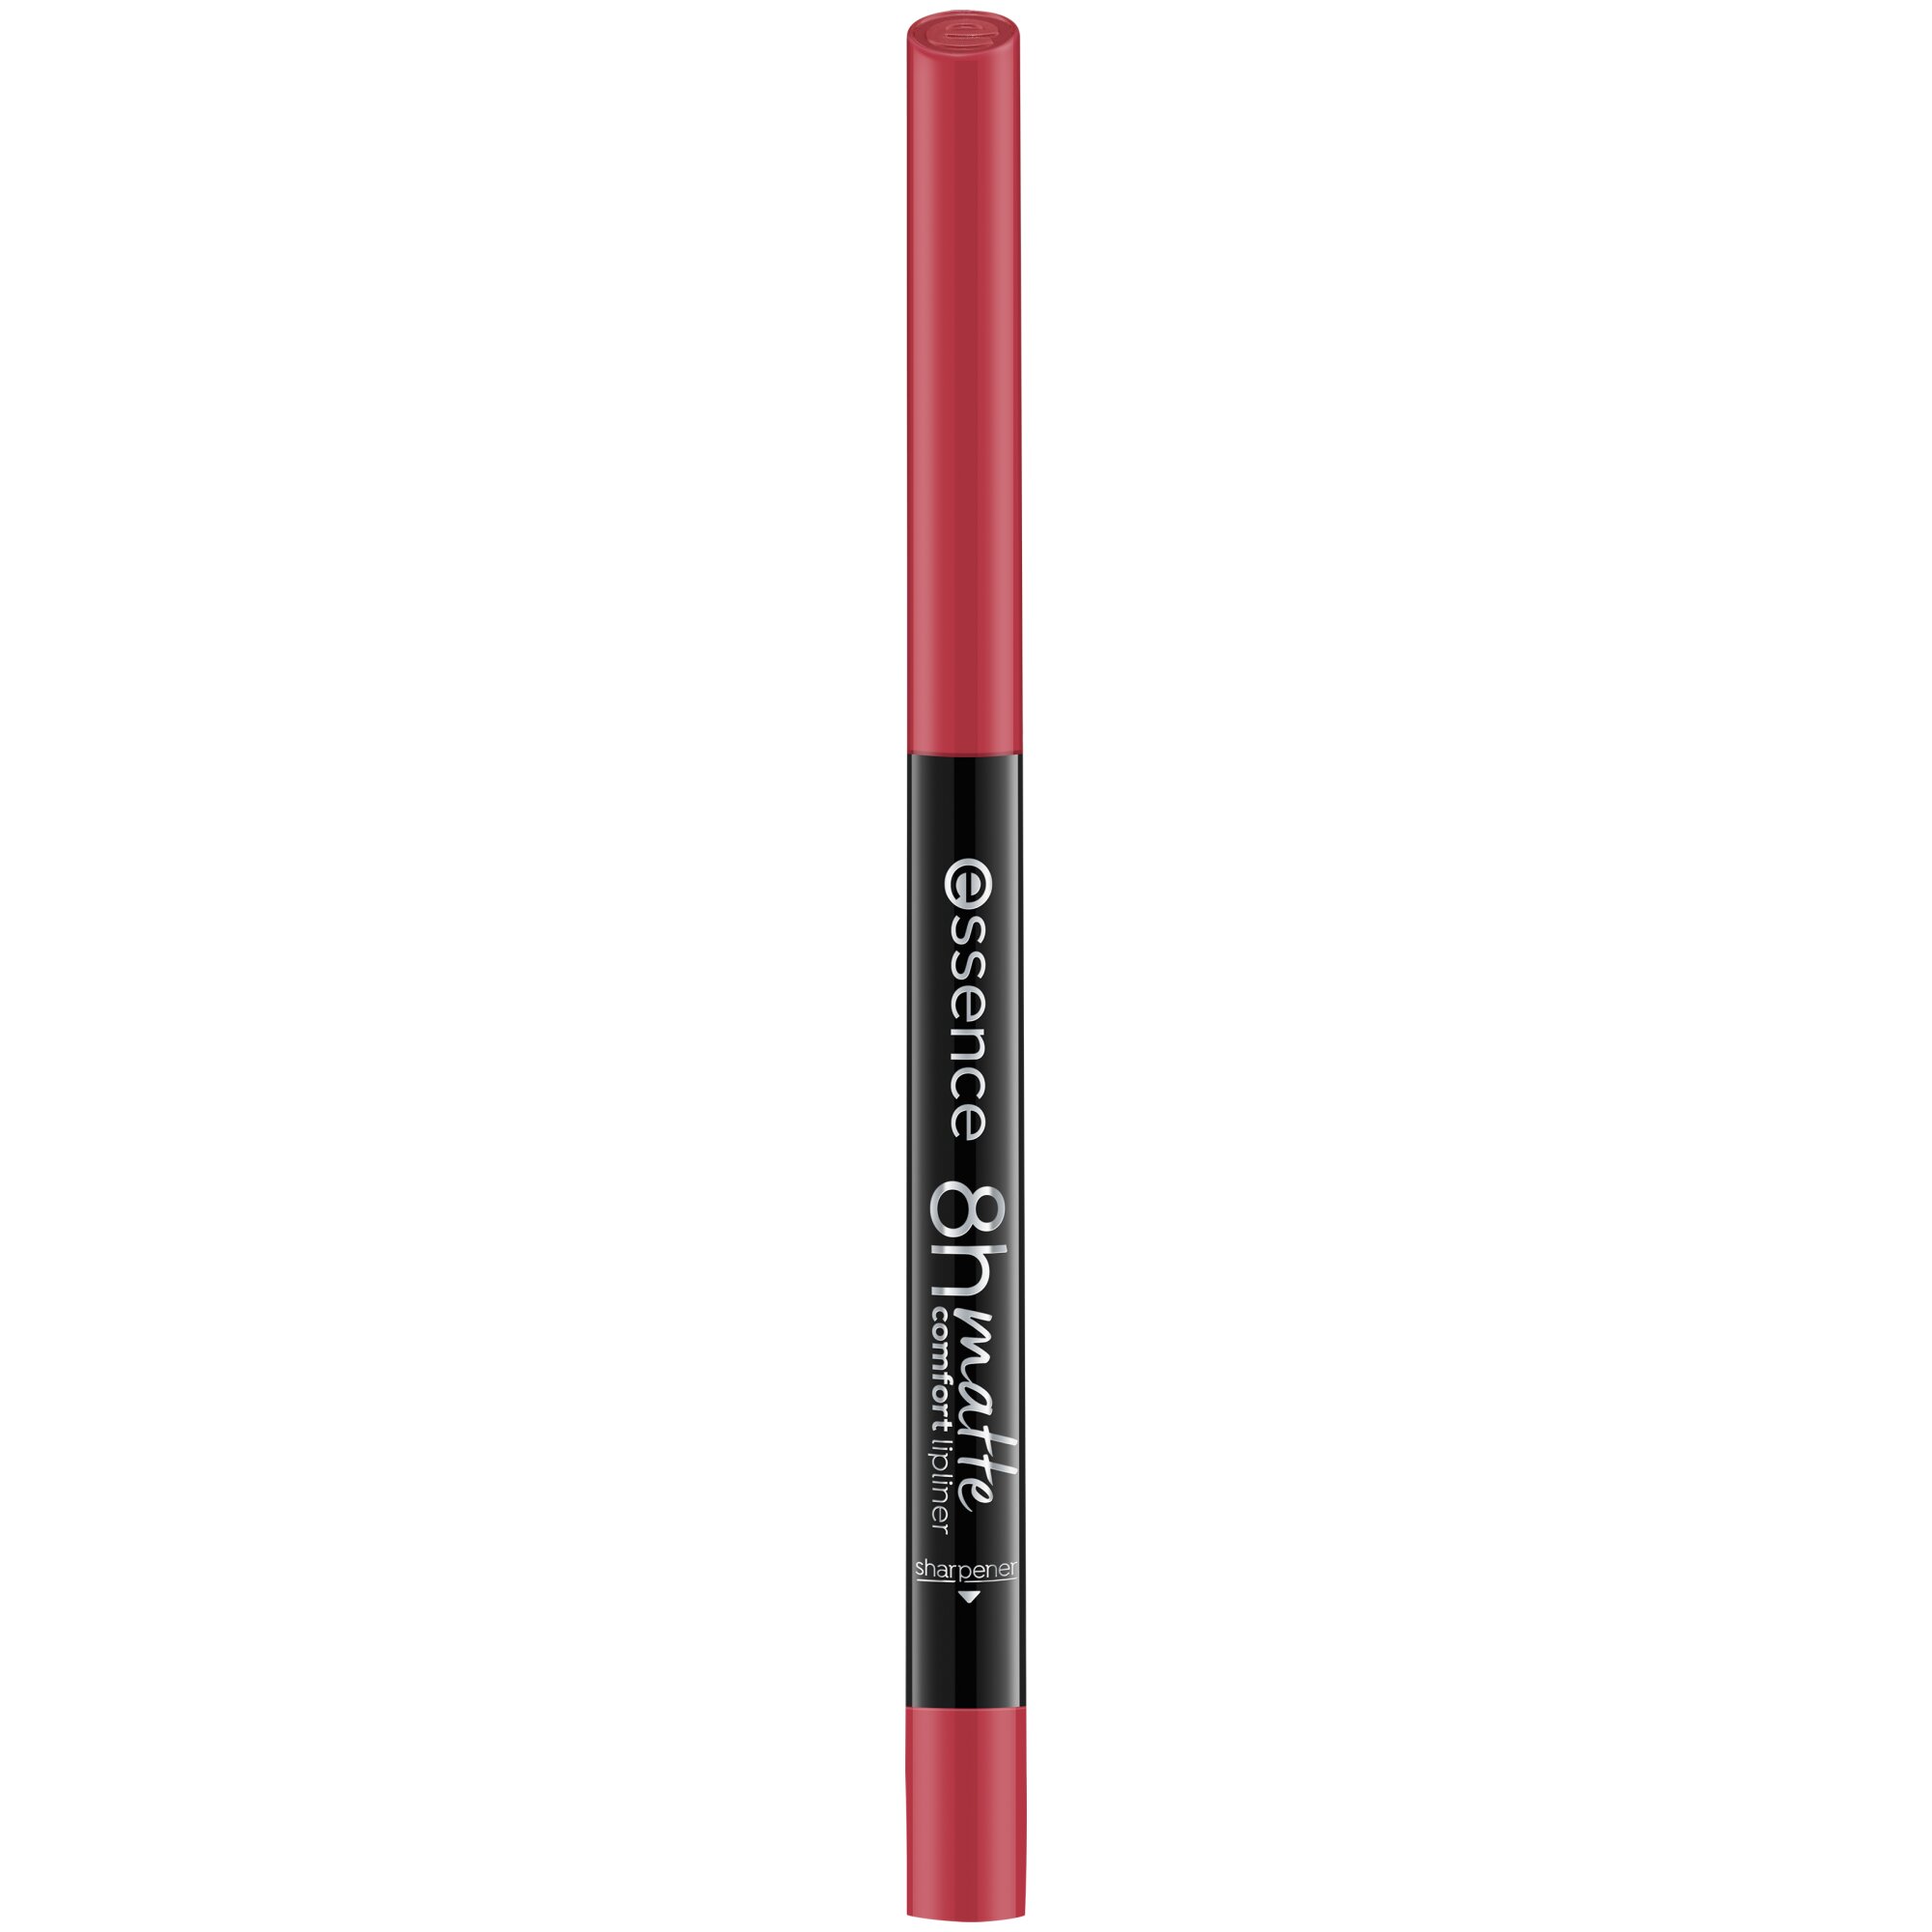 Creion pentru buze mat 8h matte comfort, 07 - Classic Red, 0.3 g, Essence